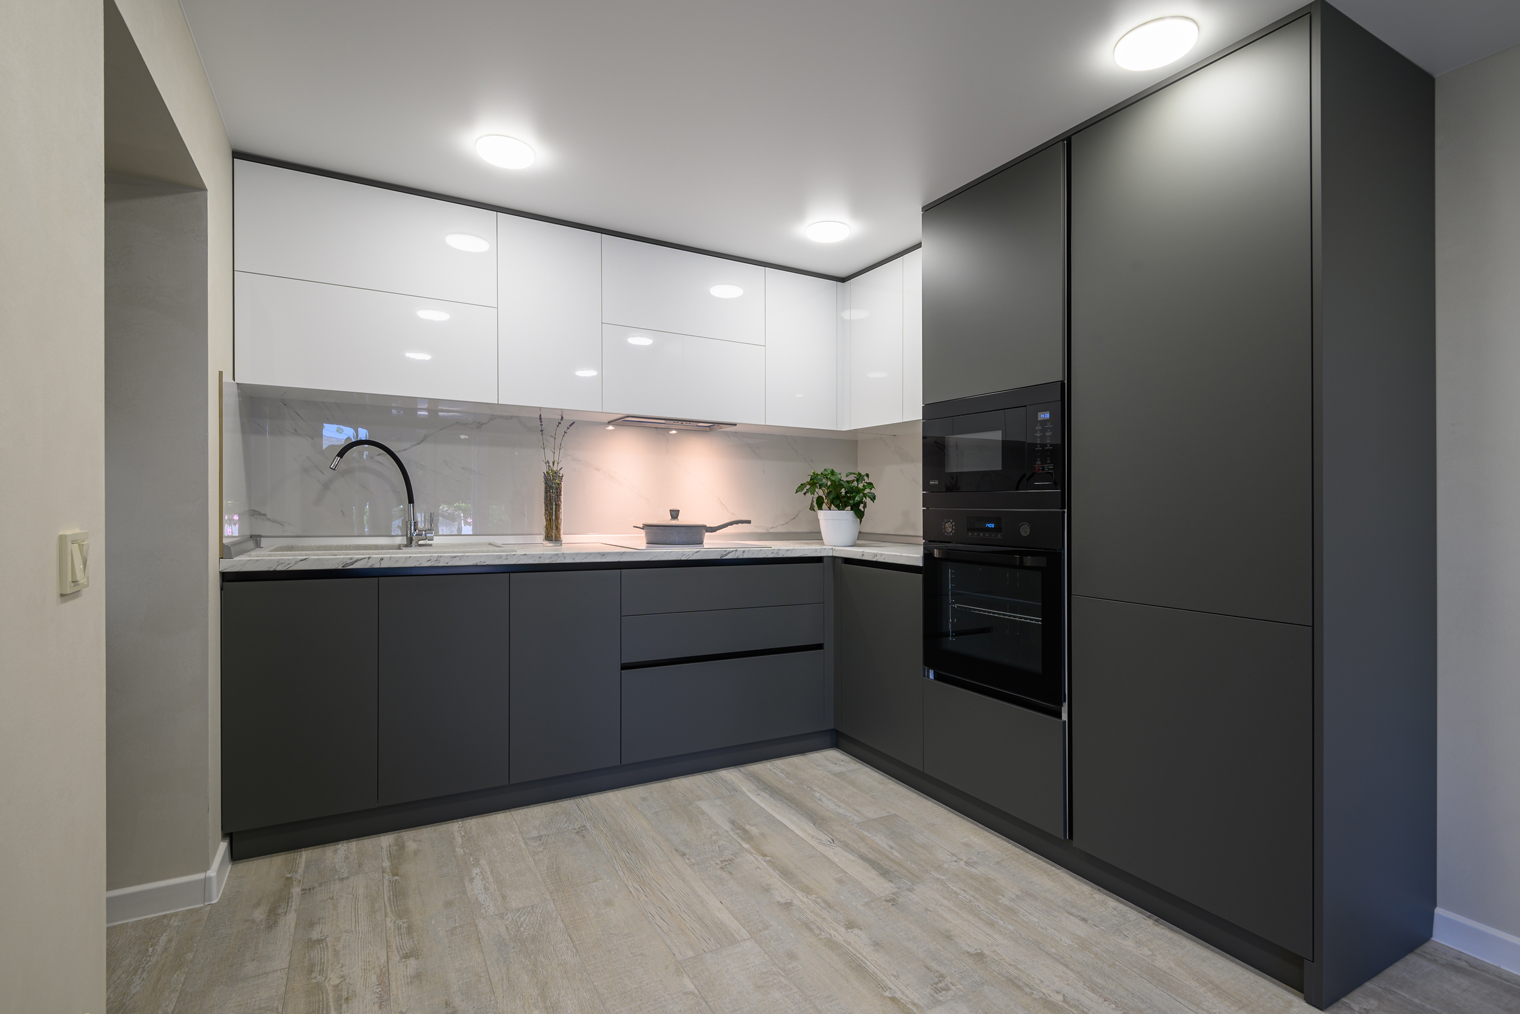 Серый хорошо сочетается в разных оттенках — от почти белого до почти черного, но такая кухня выглядит холодно. Фотография: Serghei Starus / Shutterstock / FOTODOM